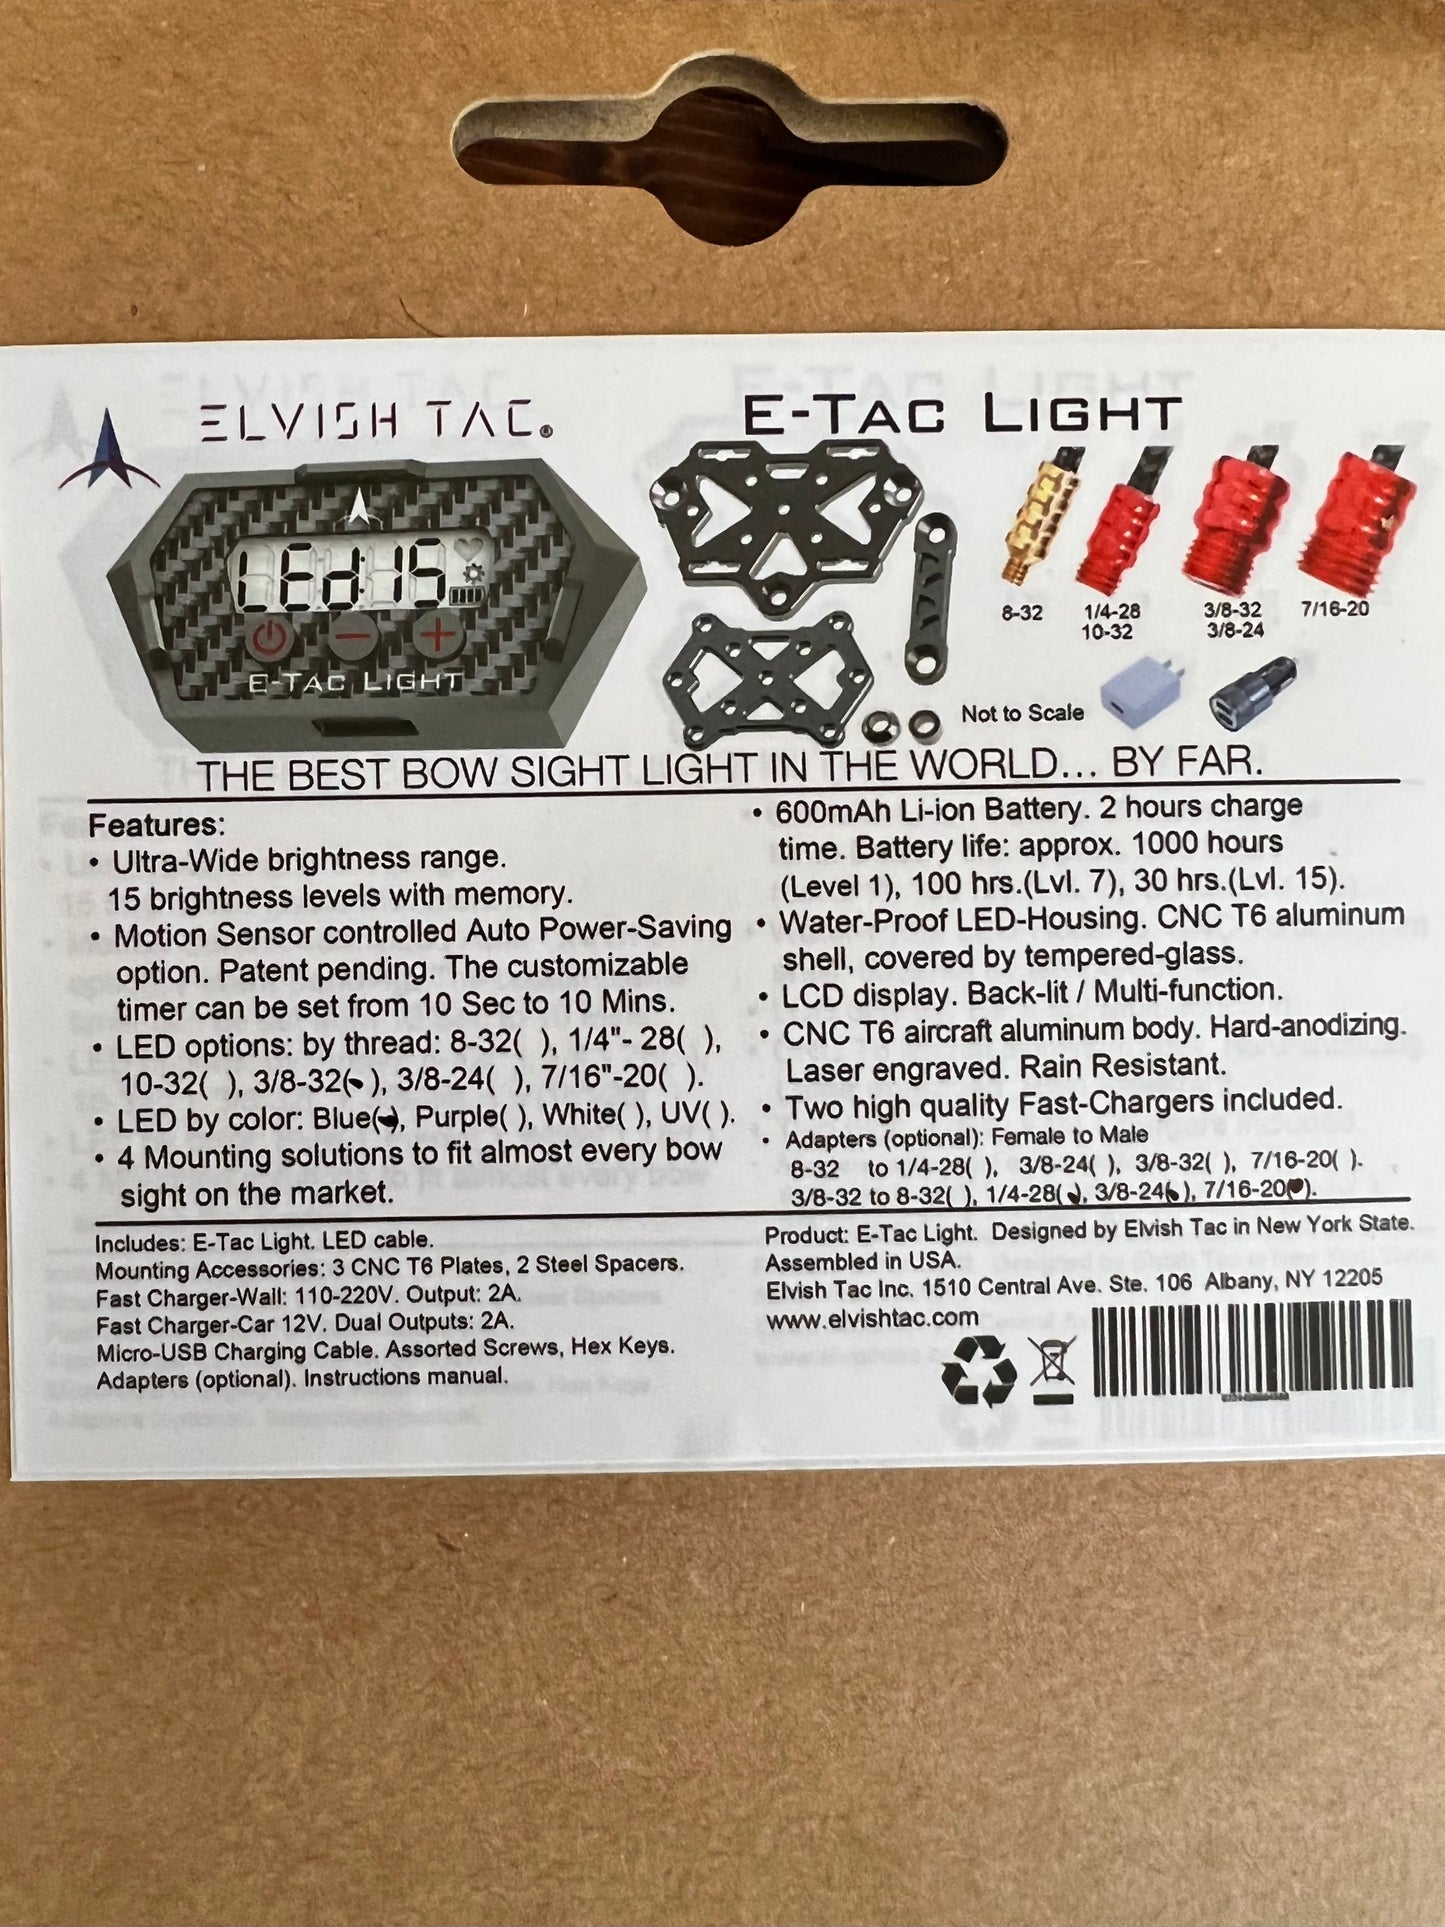 Elvish Tac E-Tac Bow Sight Light